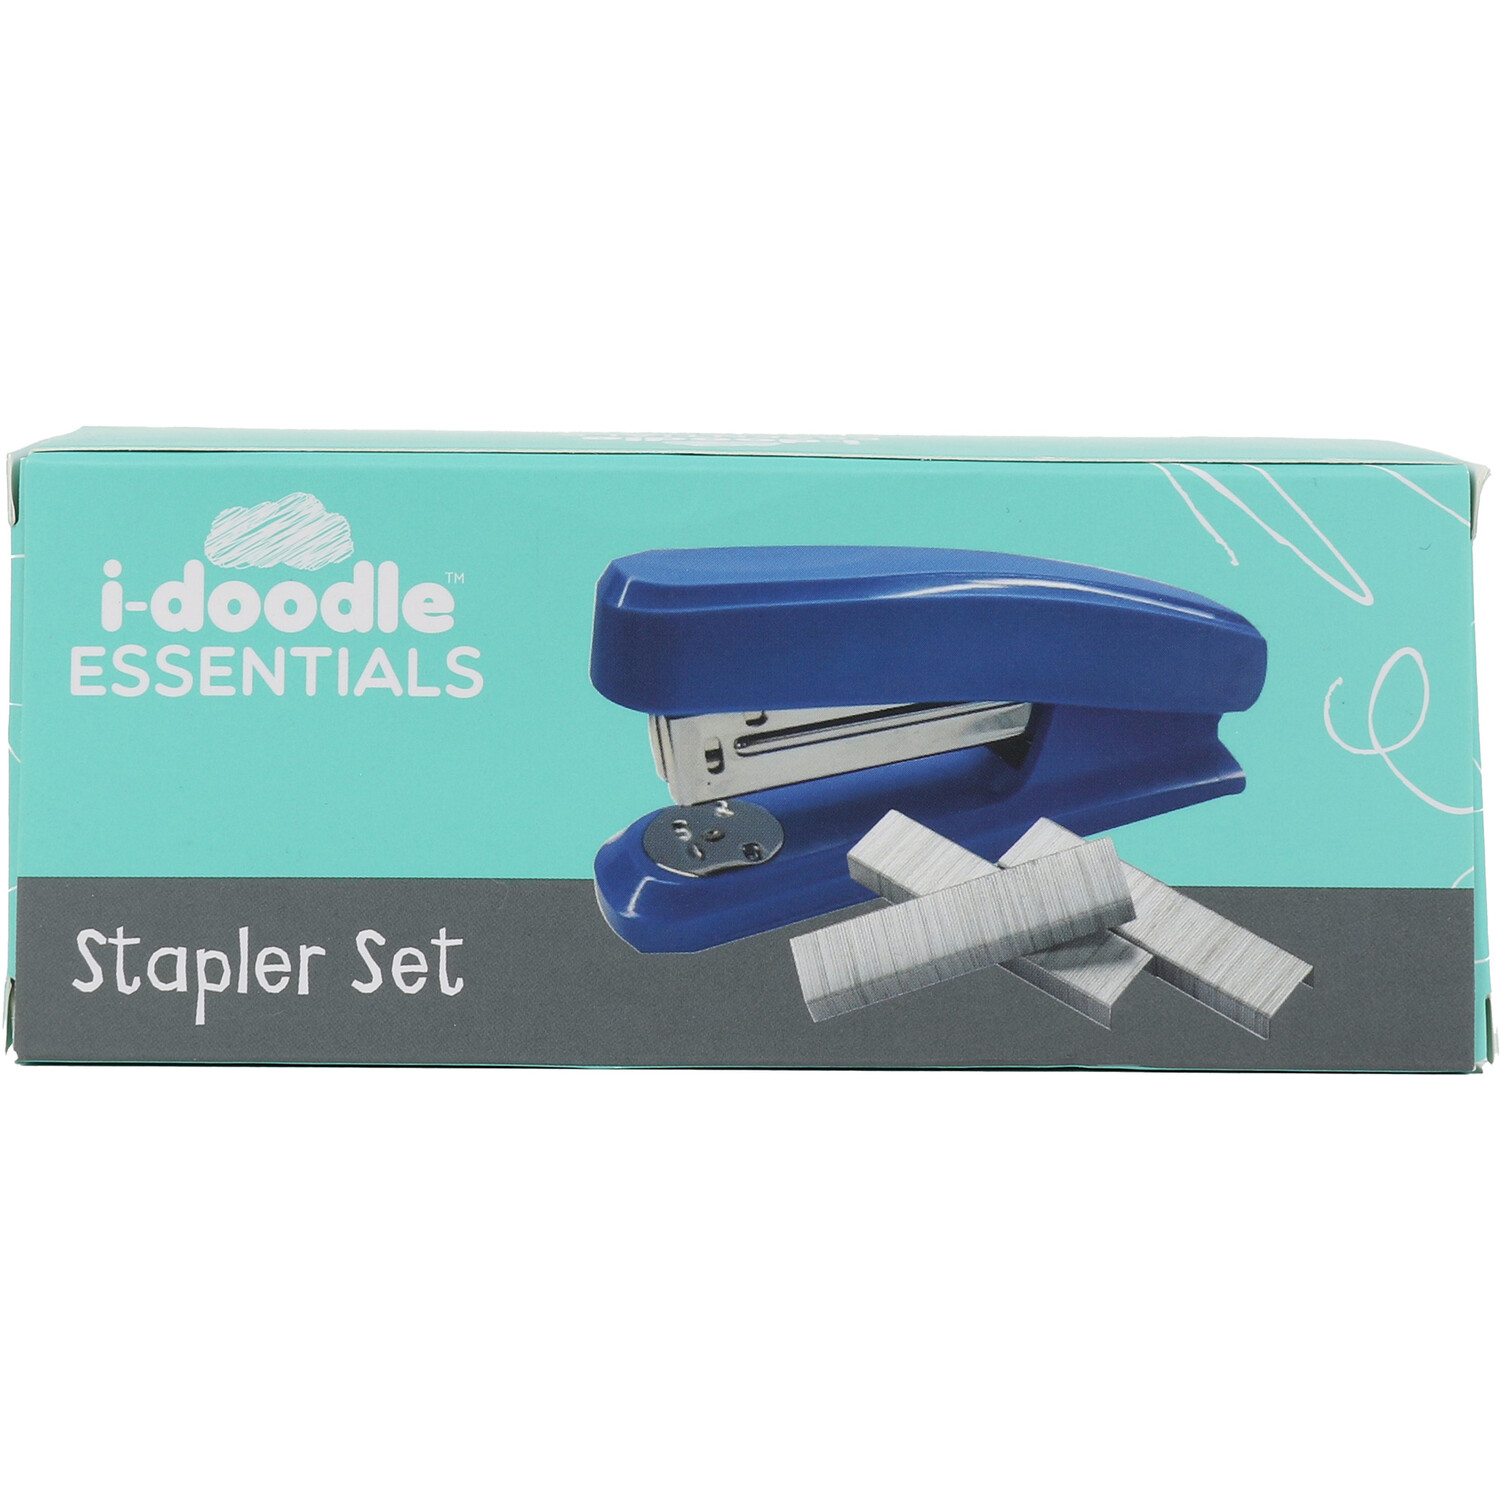 Stapler Set Image 1